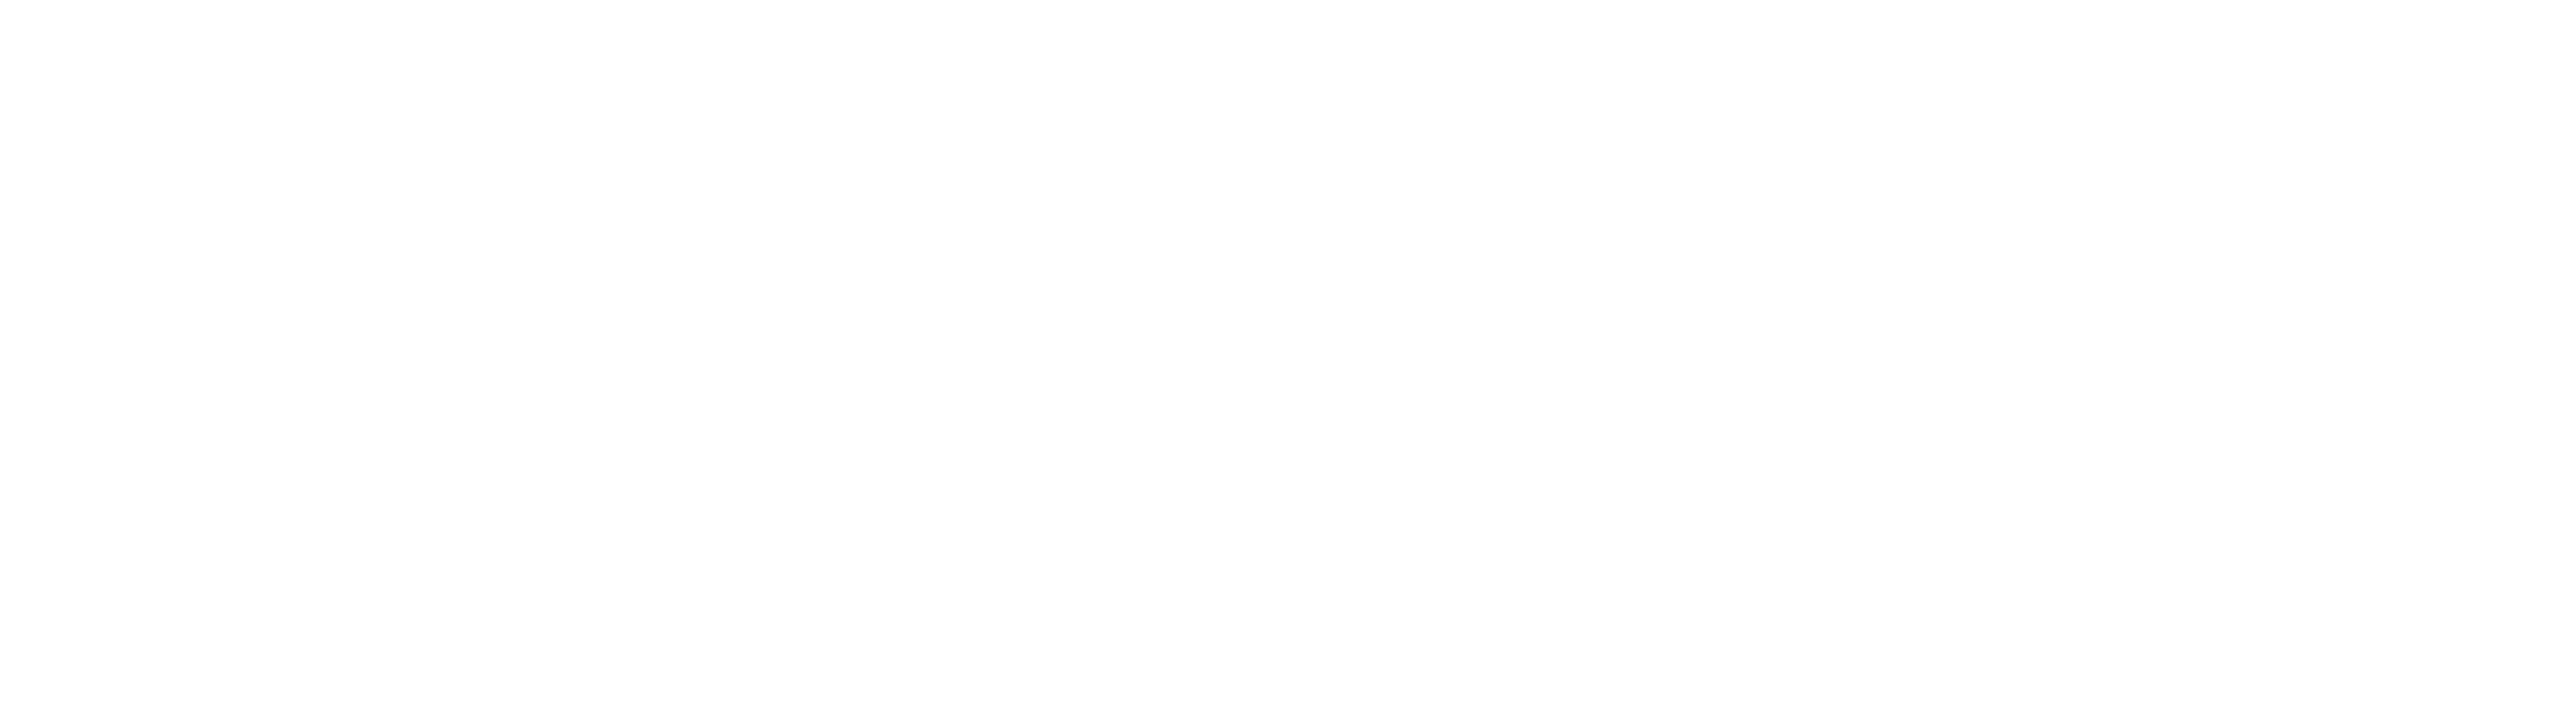 PredictionHealth-logo-white 5k